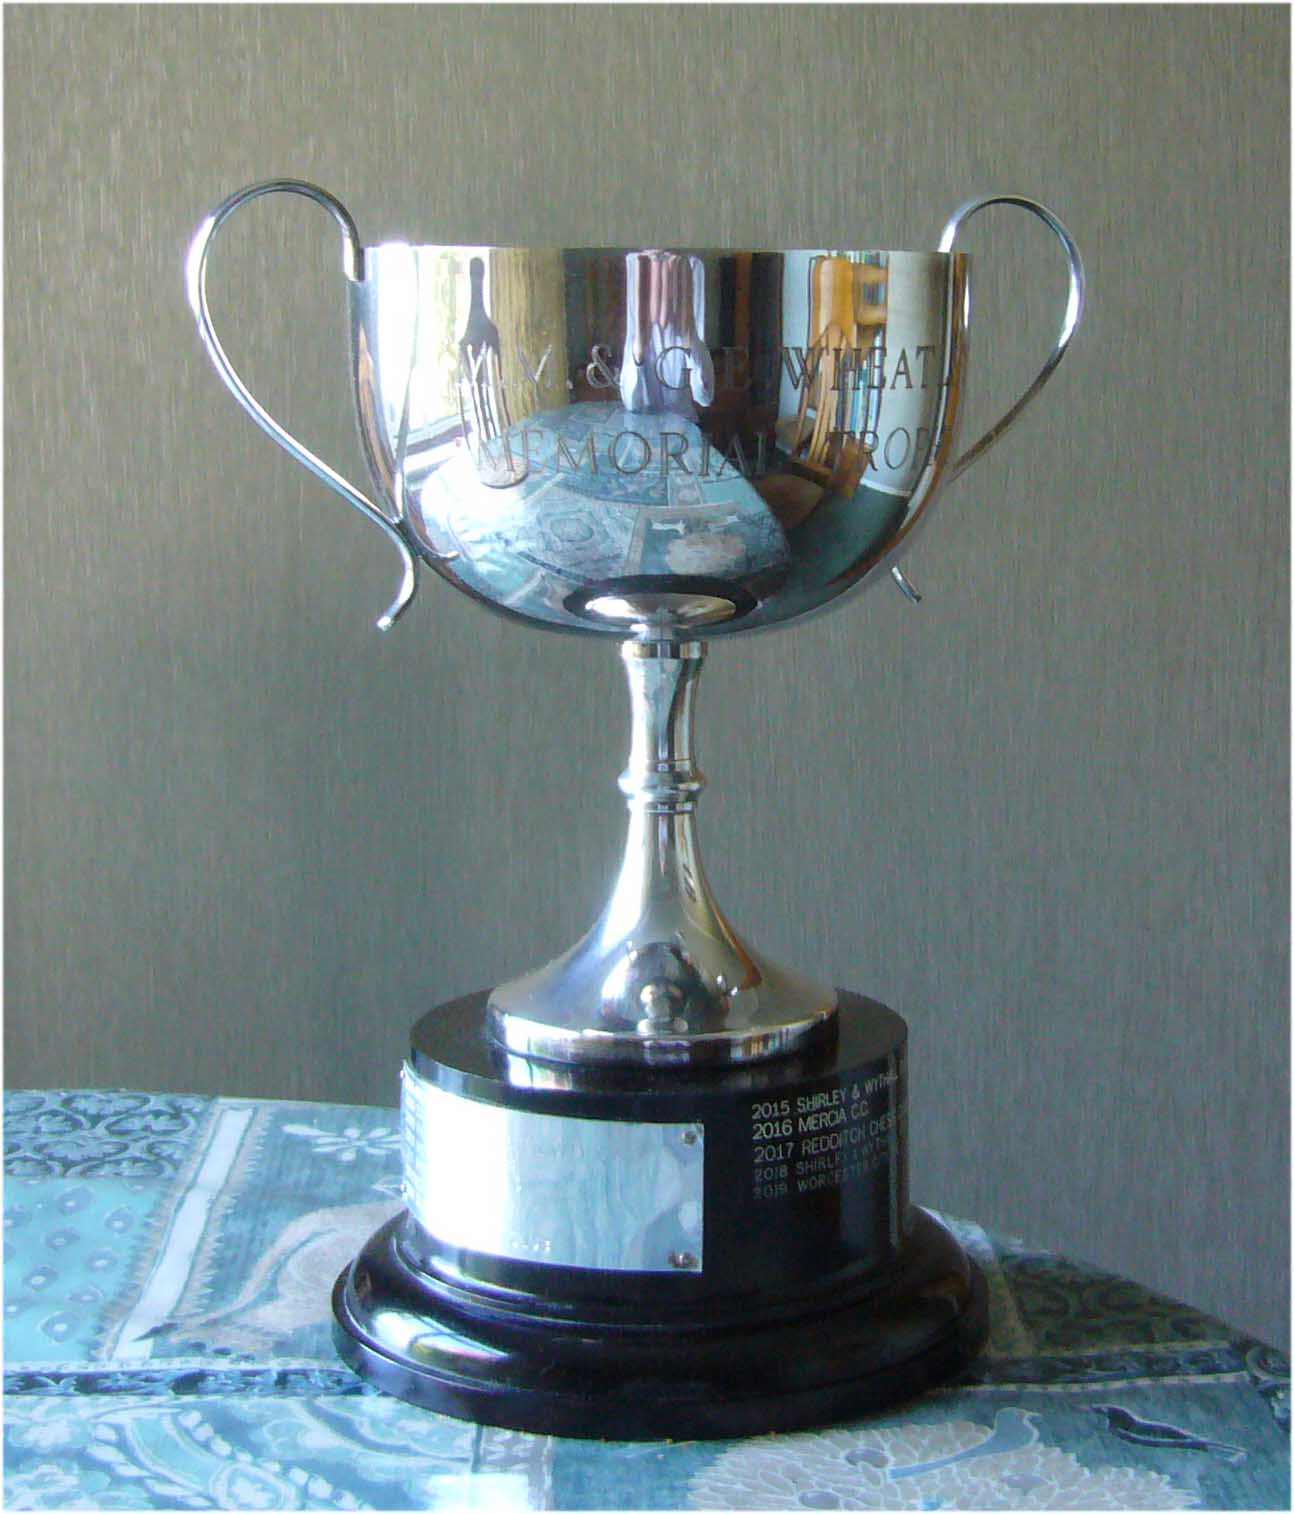 Wheatley Memorial Cup